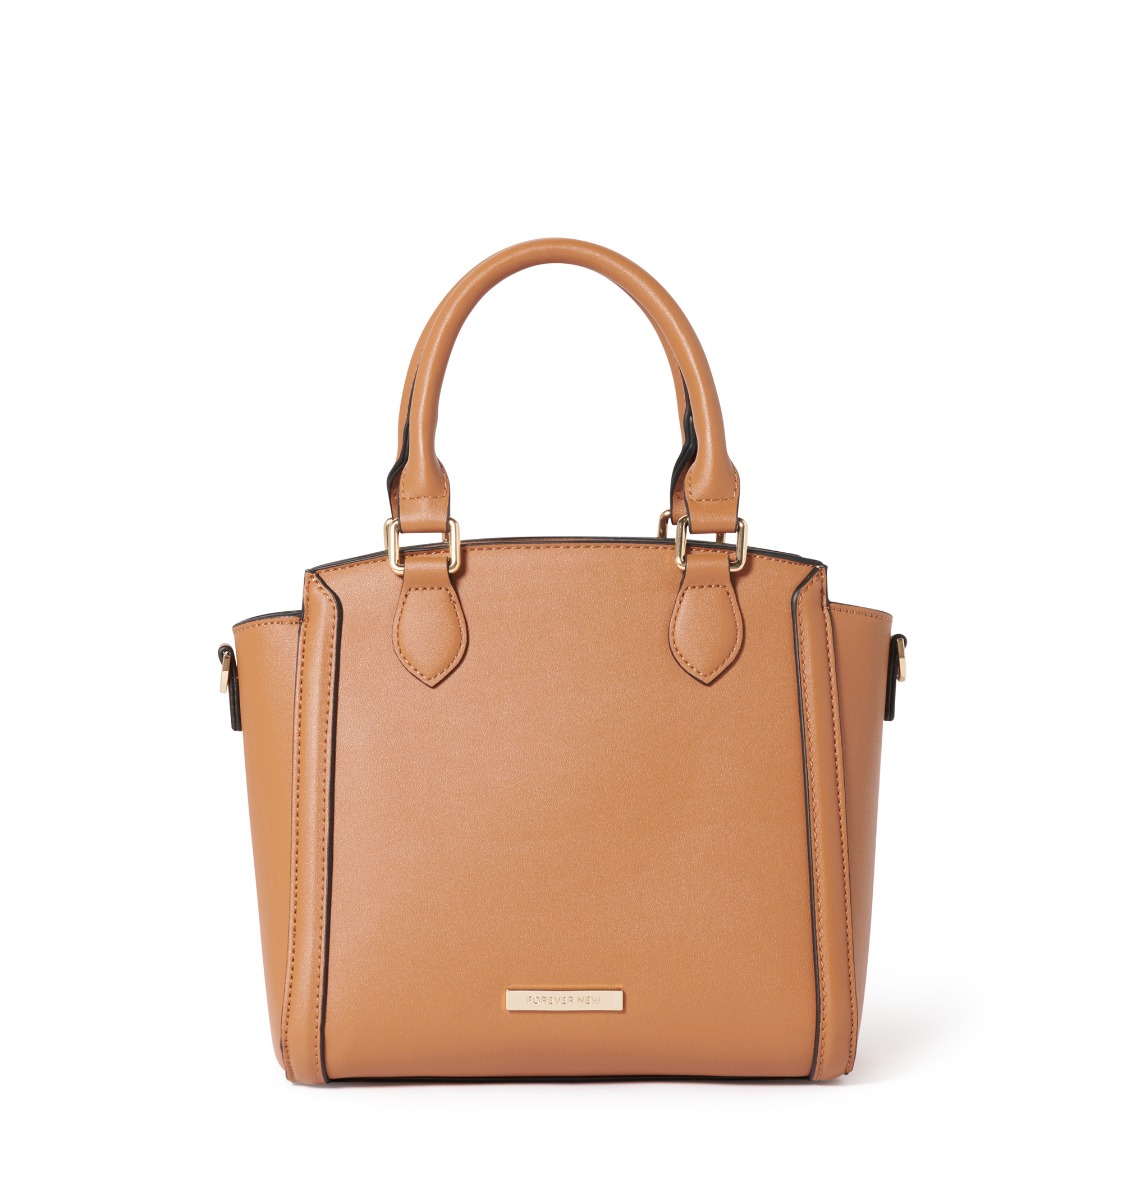 Set of 7x Zara original handbags - purse | eBay